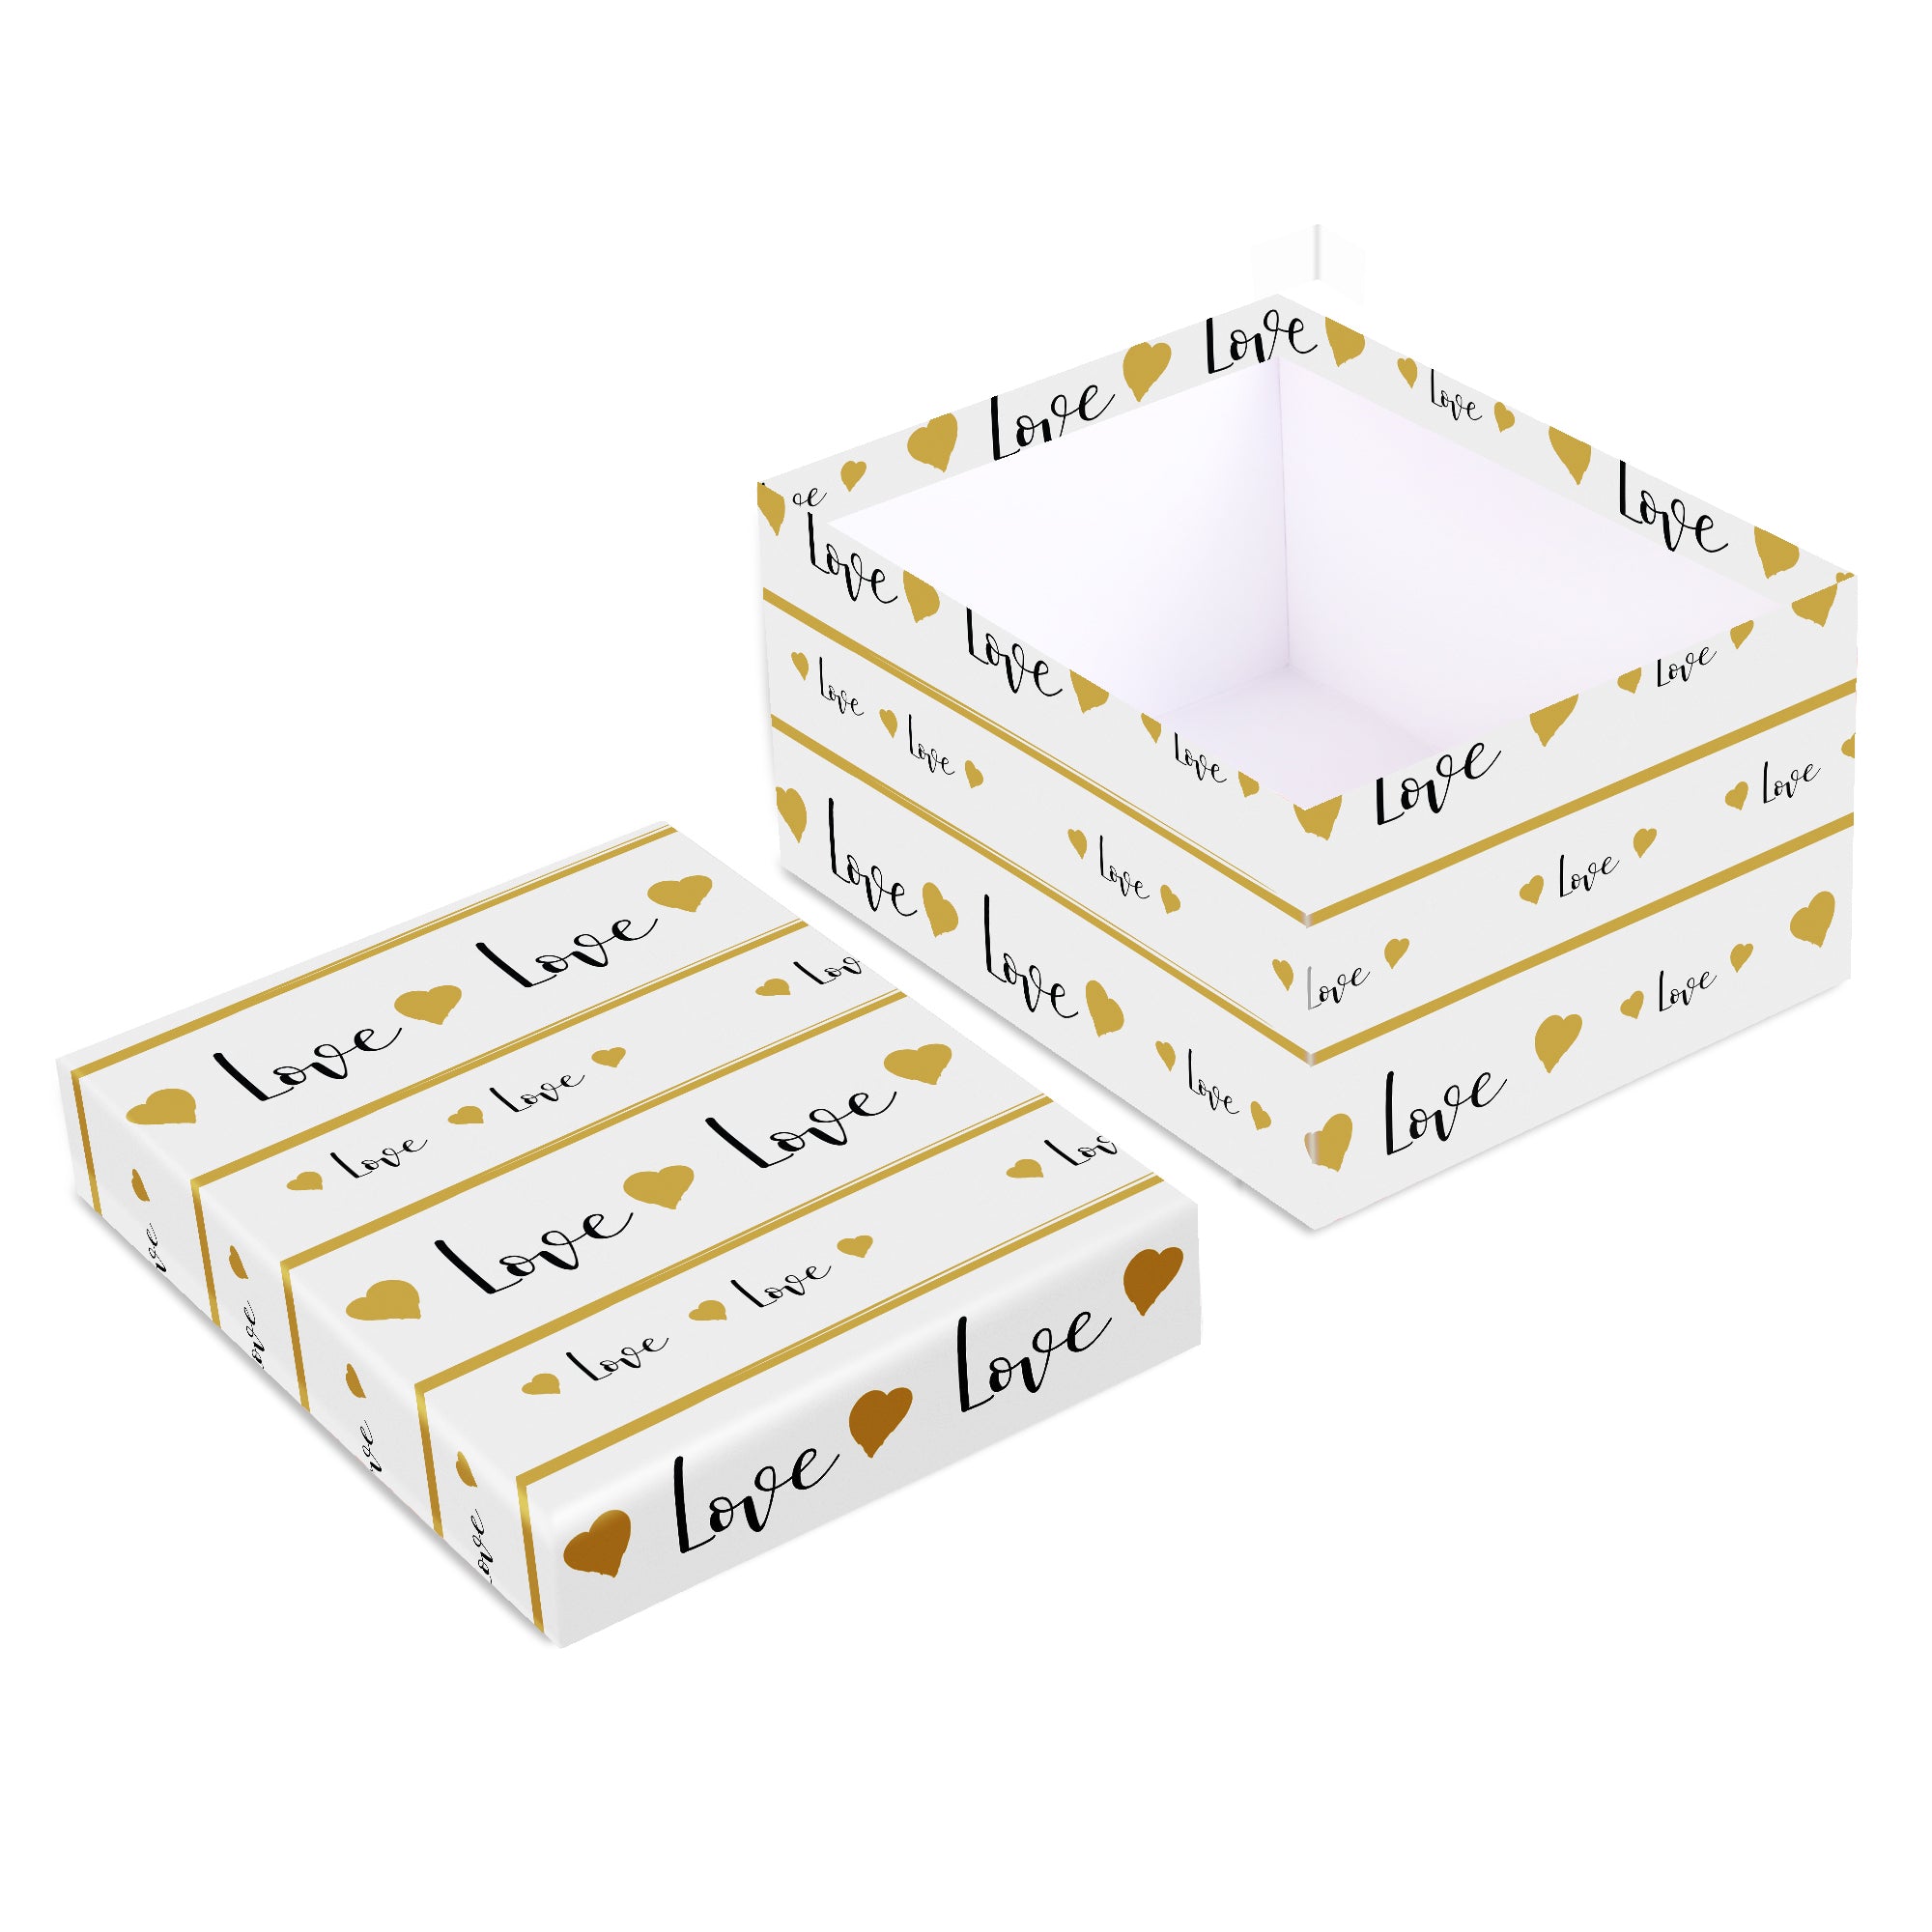 Gift Box Warm Love L15.5 X W10.5 X D6.5(cm)  1pc